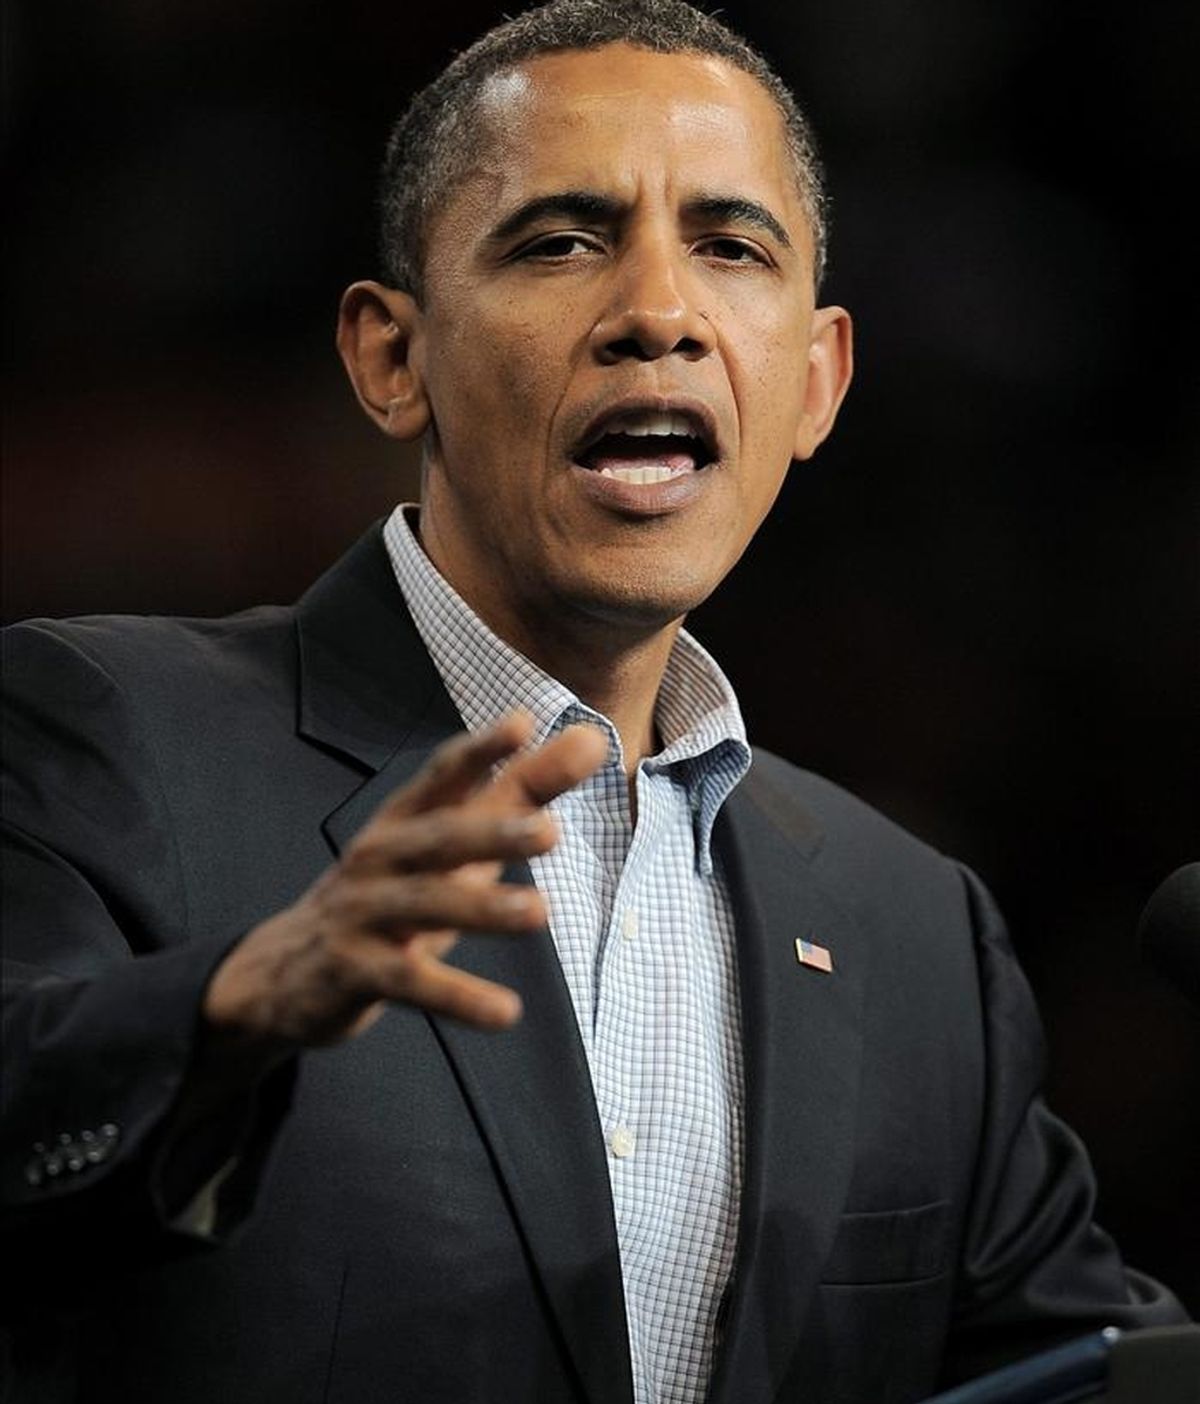 El presidente de Estados Unidos, Barack Obama,  lanzó un llamamiento "a todas las partes implicadas" a mantener la calma y evitar la violencia. EFE/Archivo